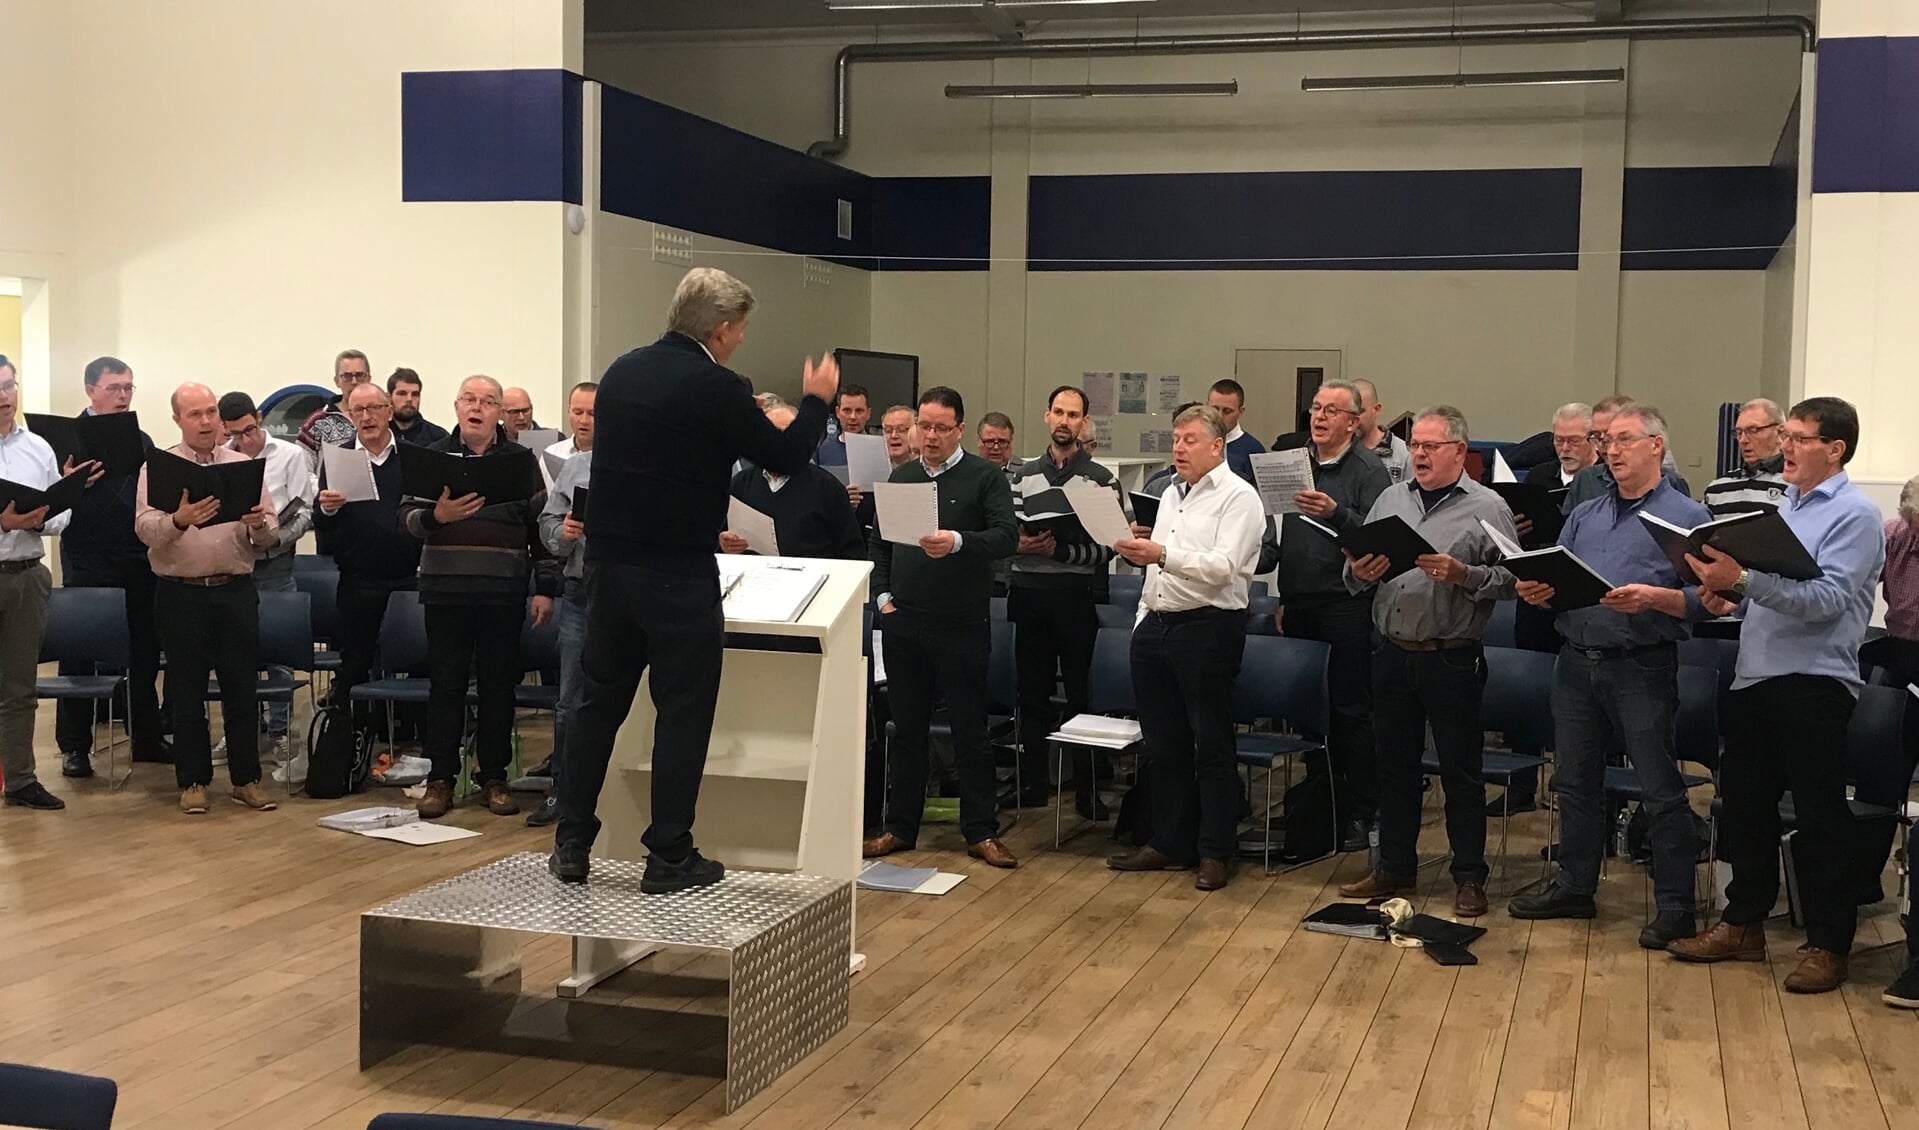 Het 50-leden tellende Christelijk Ouddorps Mannenkoor zingt psalmen en geestelijke liederen.